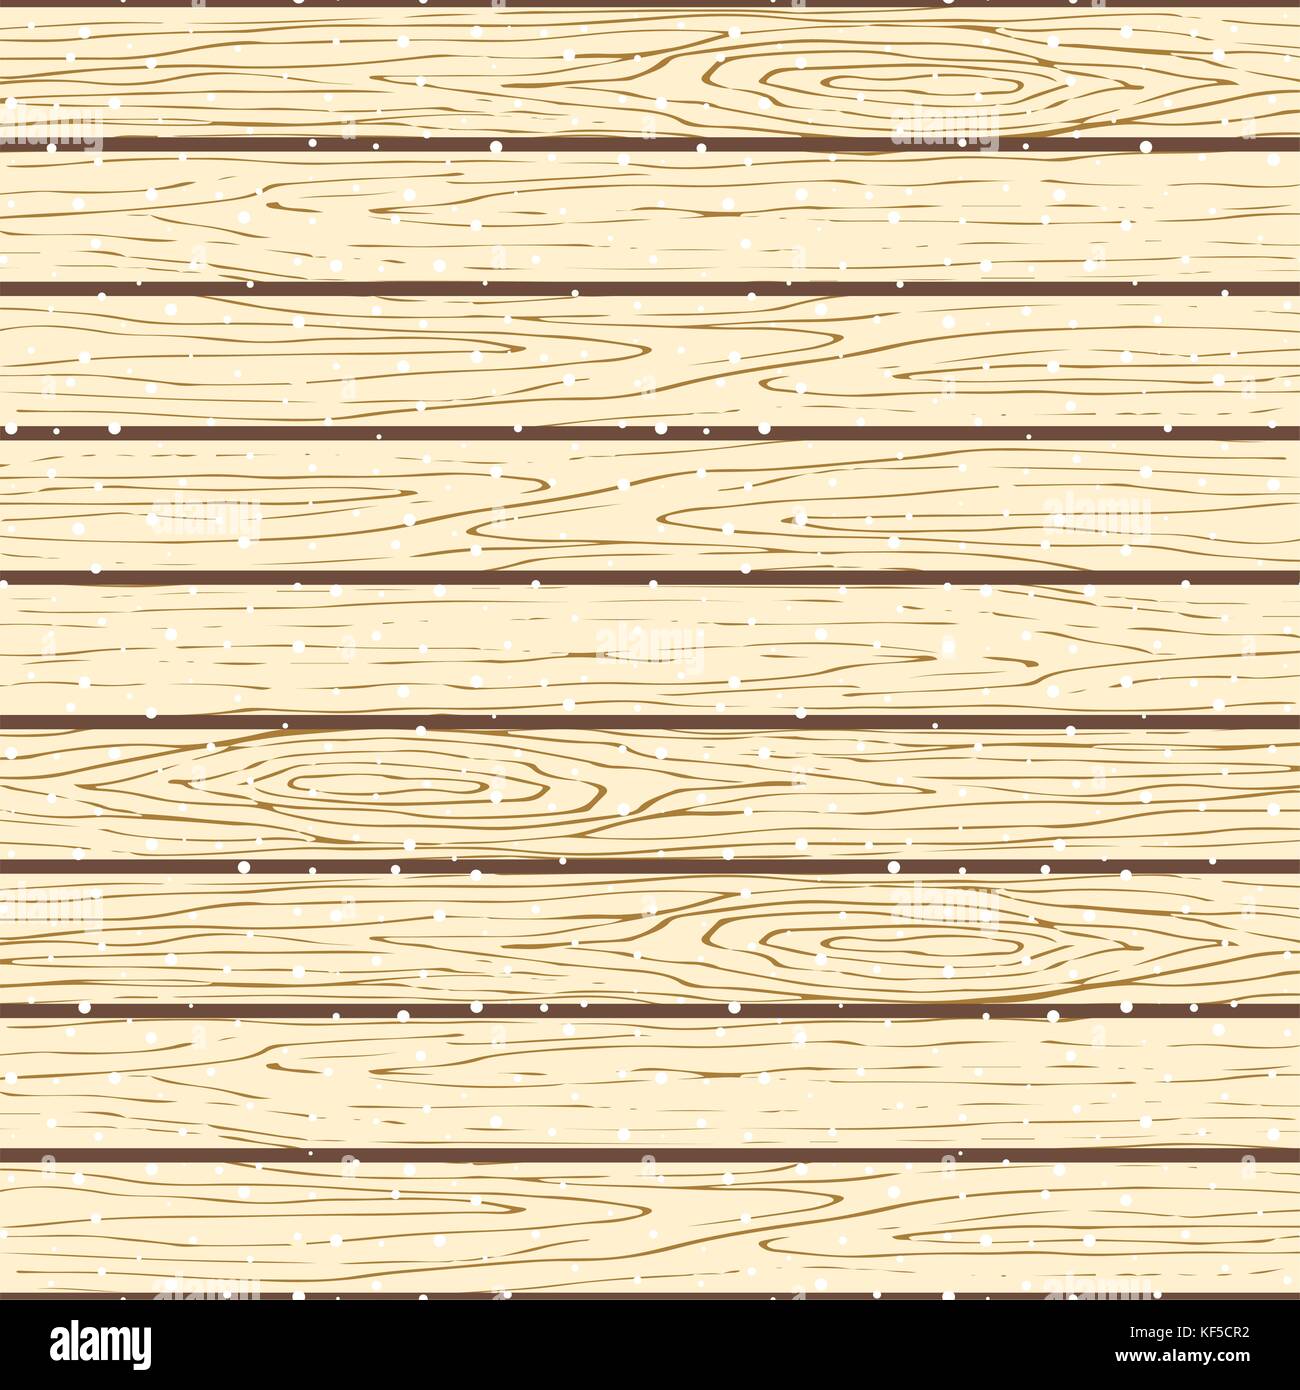 Nahtlose Holzplanken Muster. baumrinde Textur Vektor snowy Hintergrund. Stock Vektor